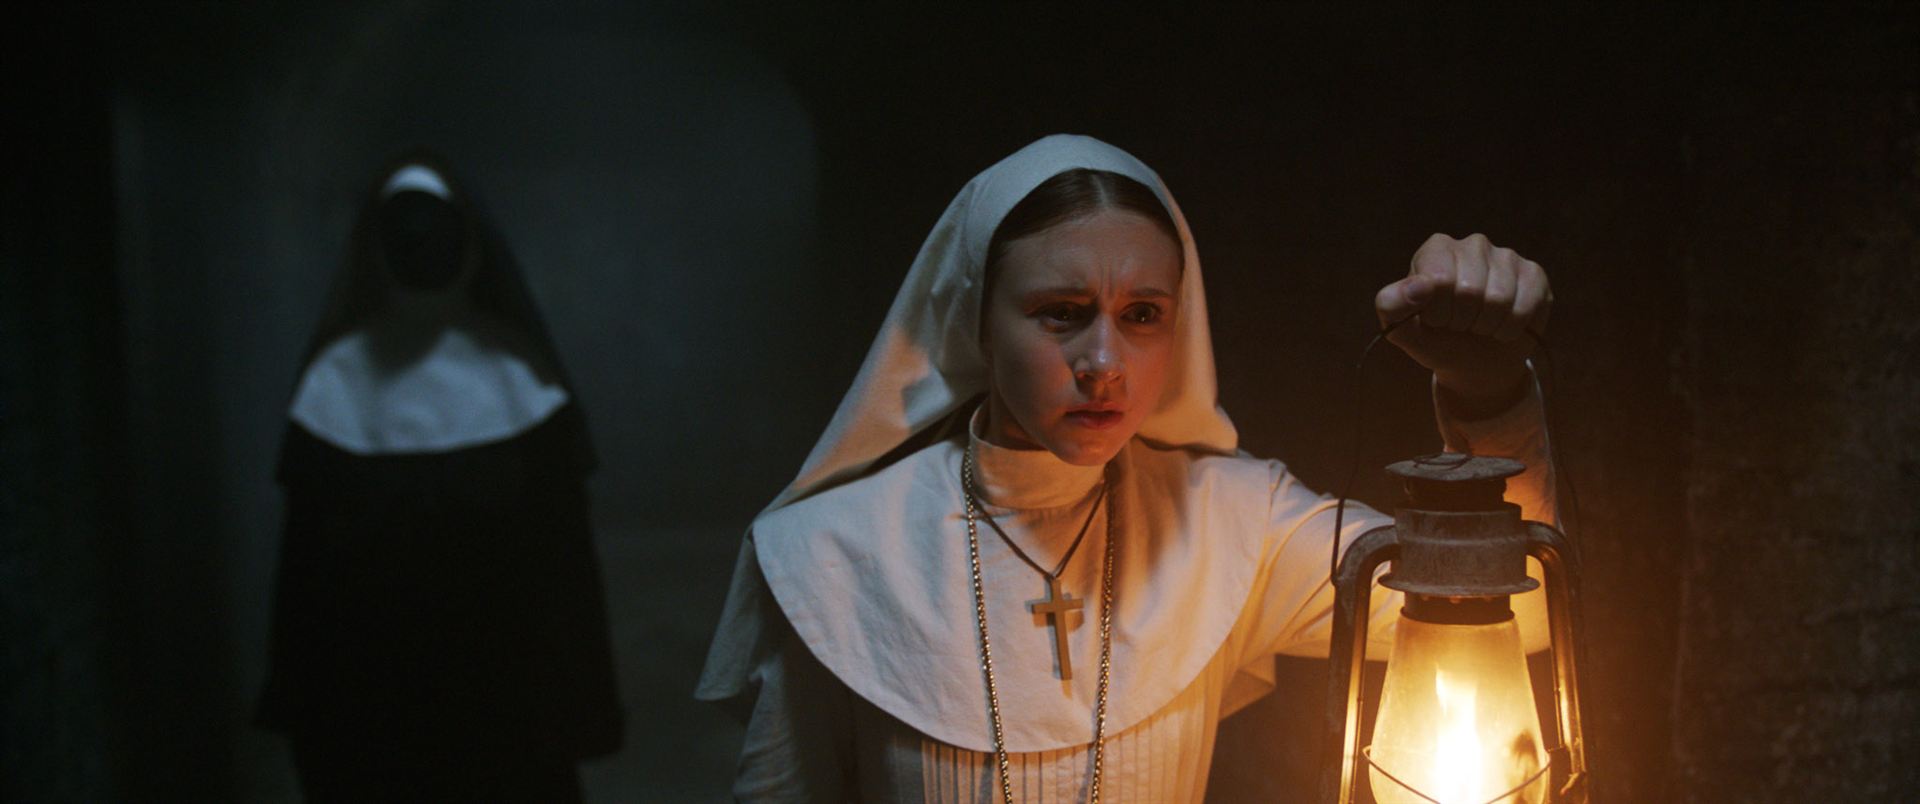 La Nonne 2 : Le film rendu encore plus sanglant après des projections tests